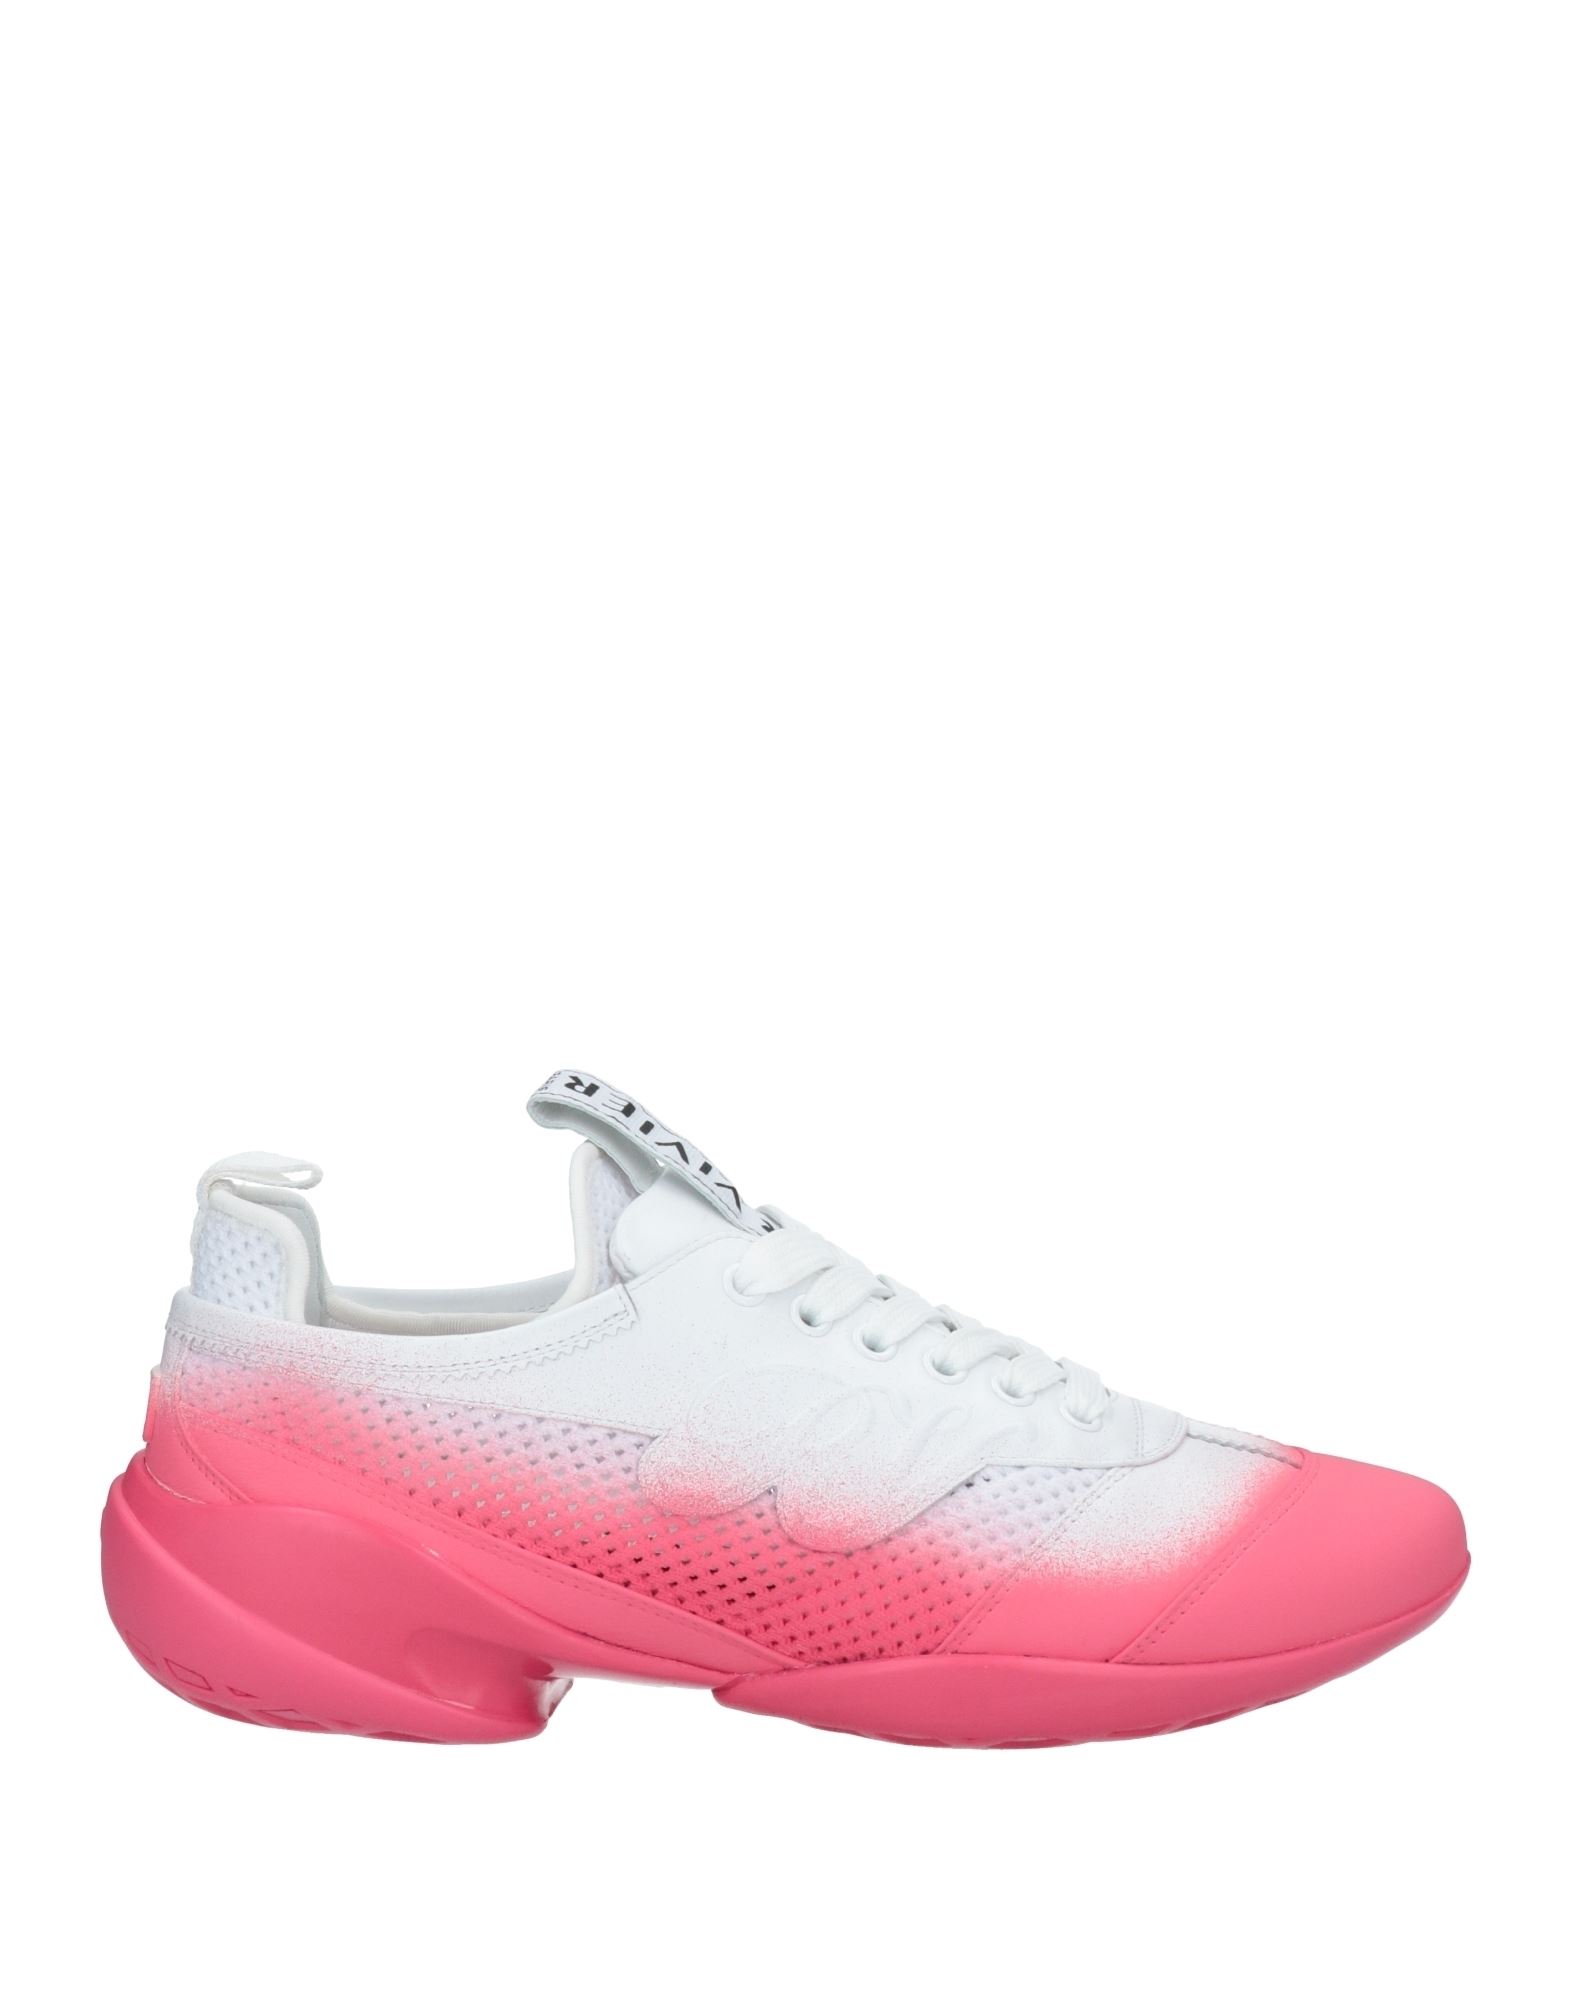 Roger Vivier Sneakers In Pink